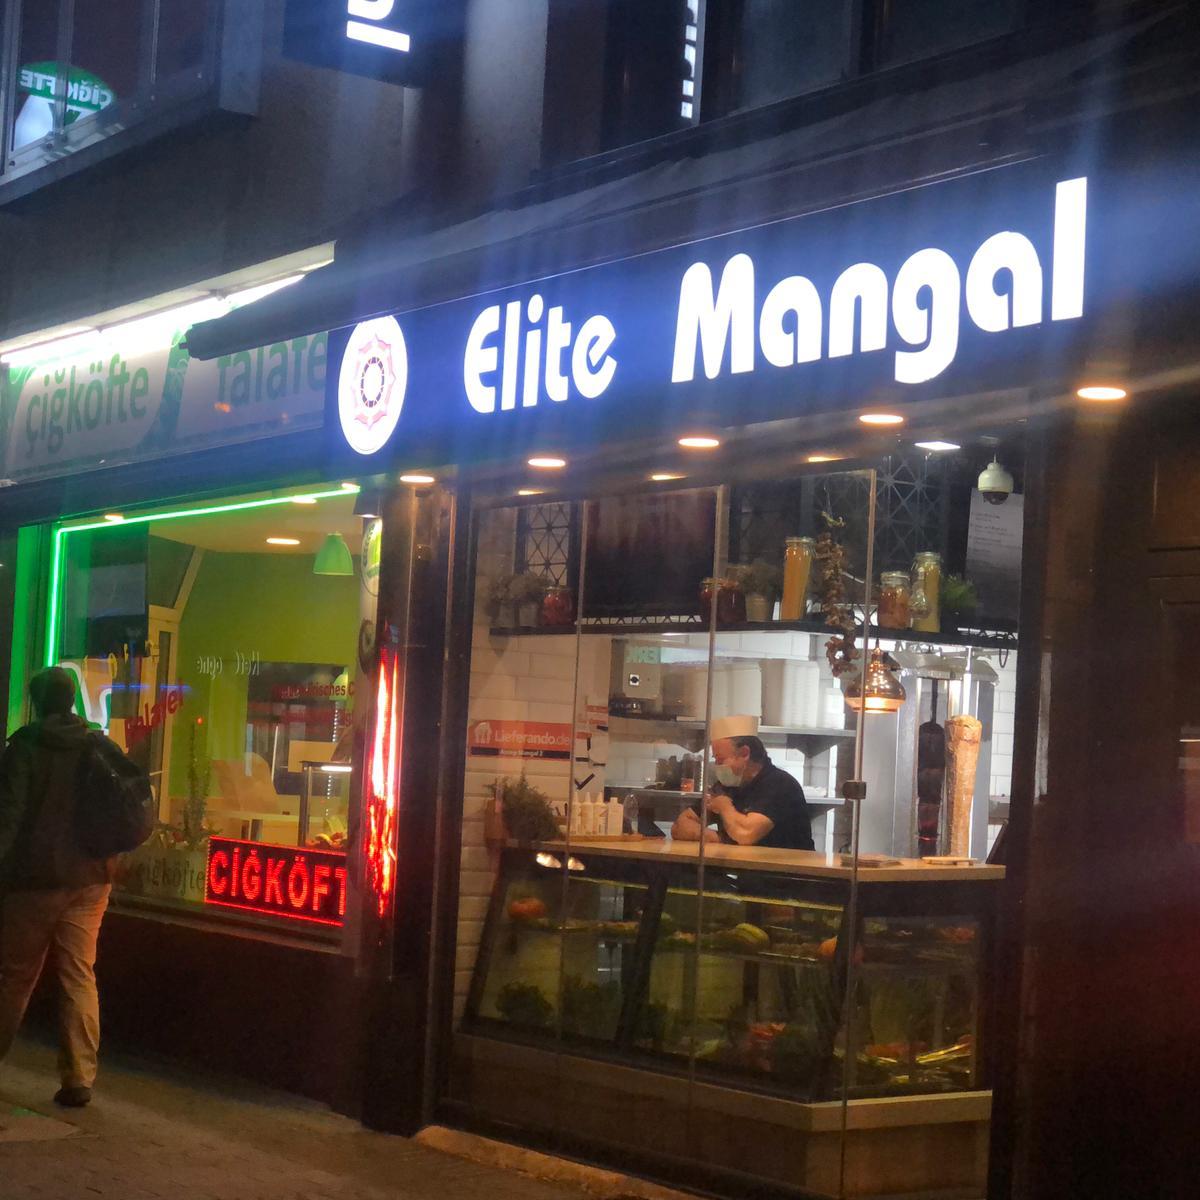 Restaurant "Elite Mangal Restaurant" in Köln